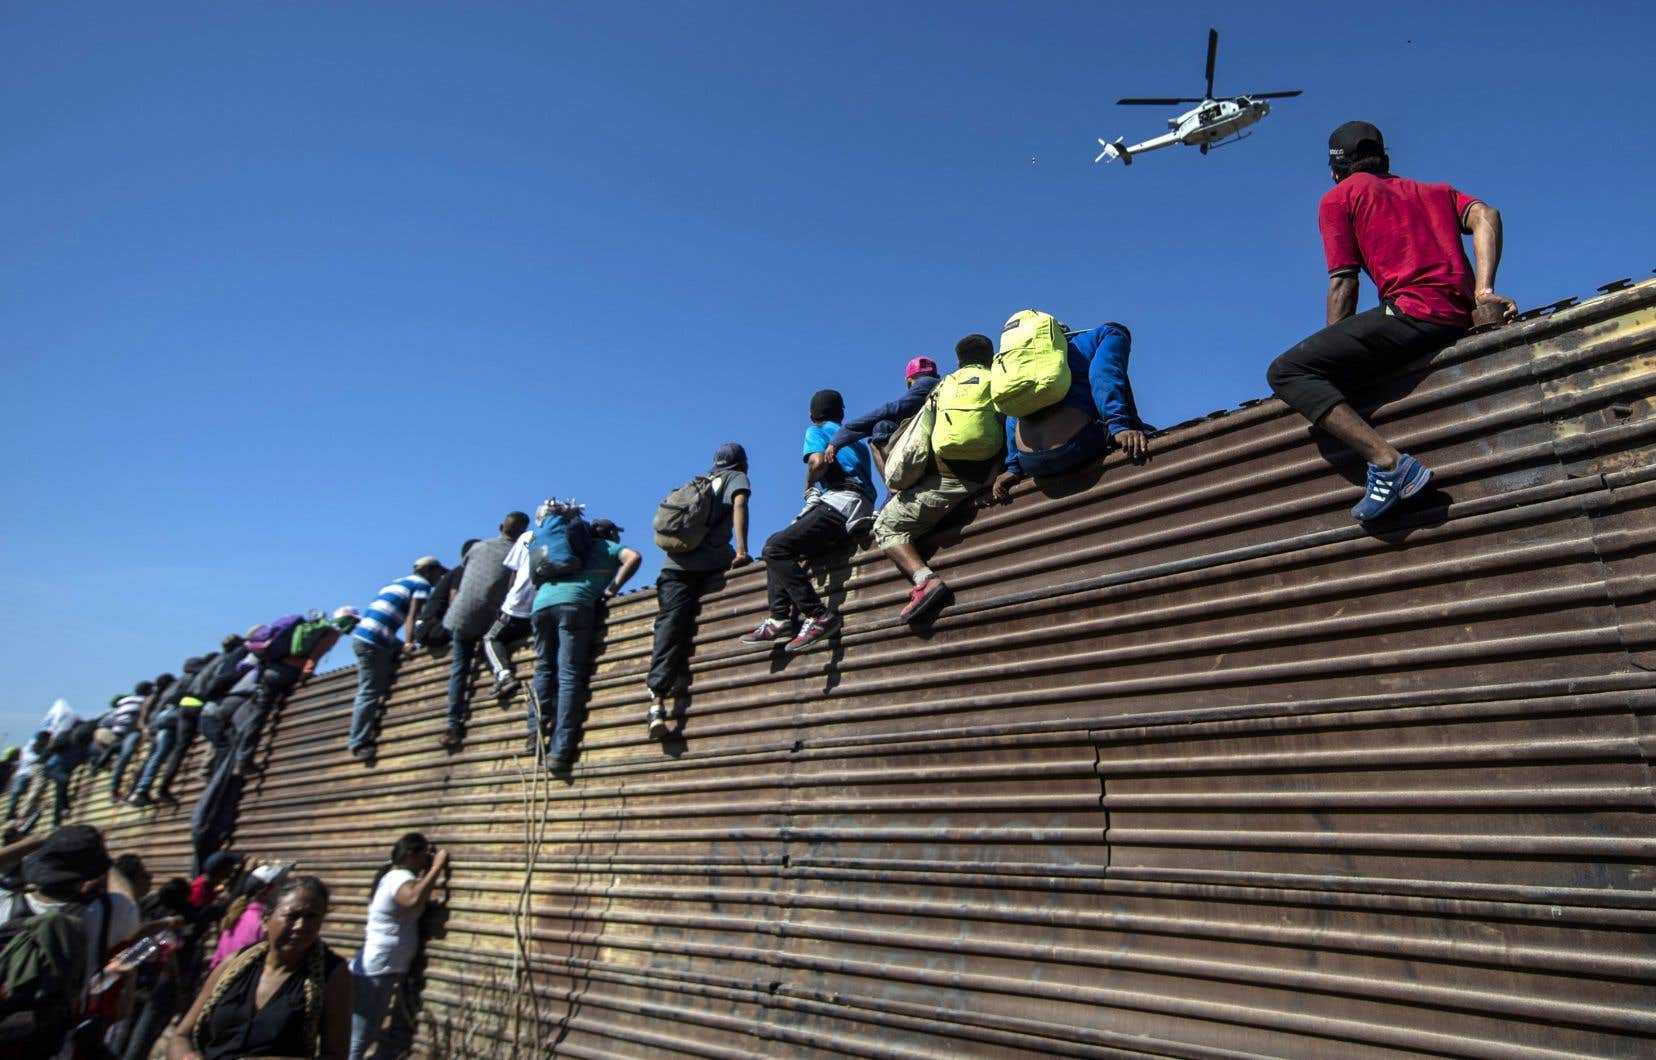 Les États-Unis annoncent des mesures strictes contre l'immigration illégale à la frontière